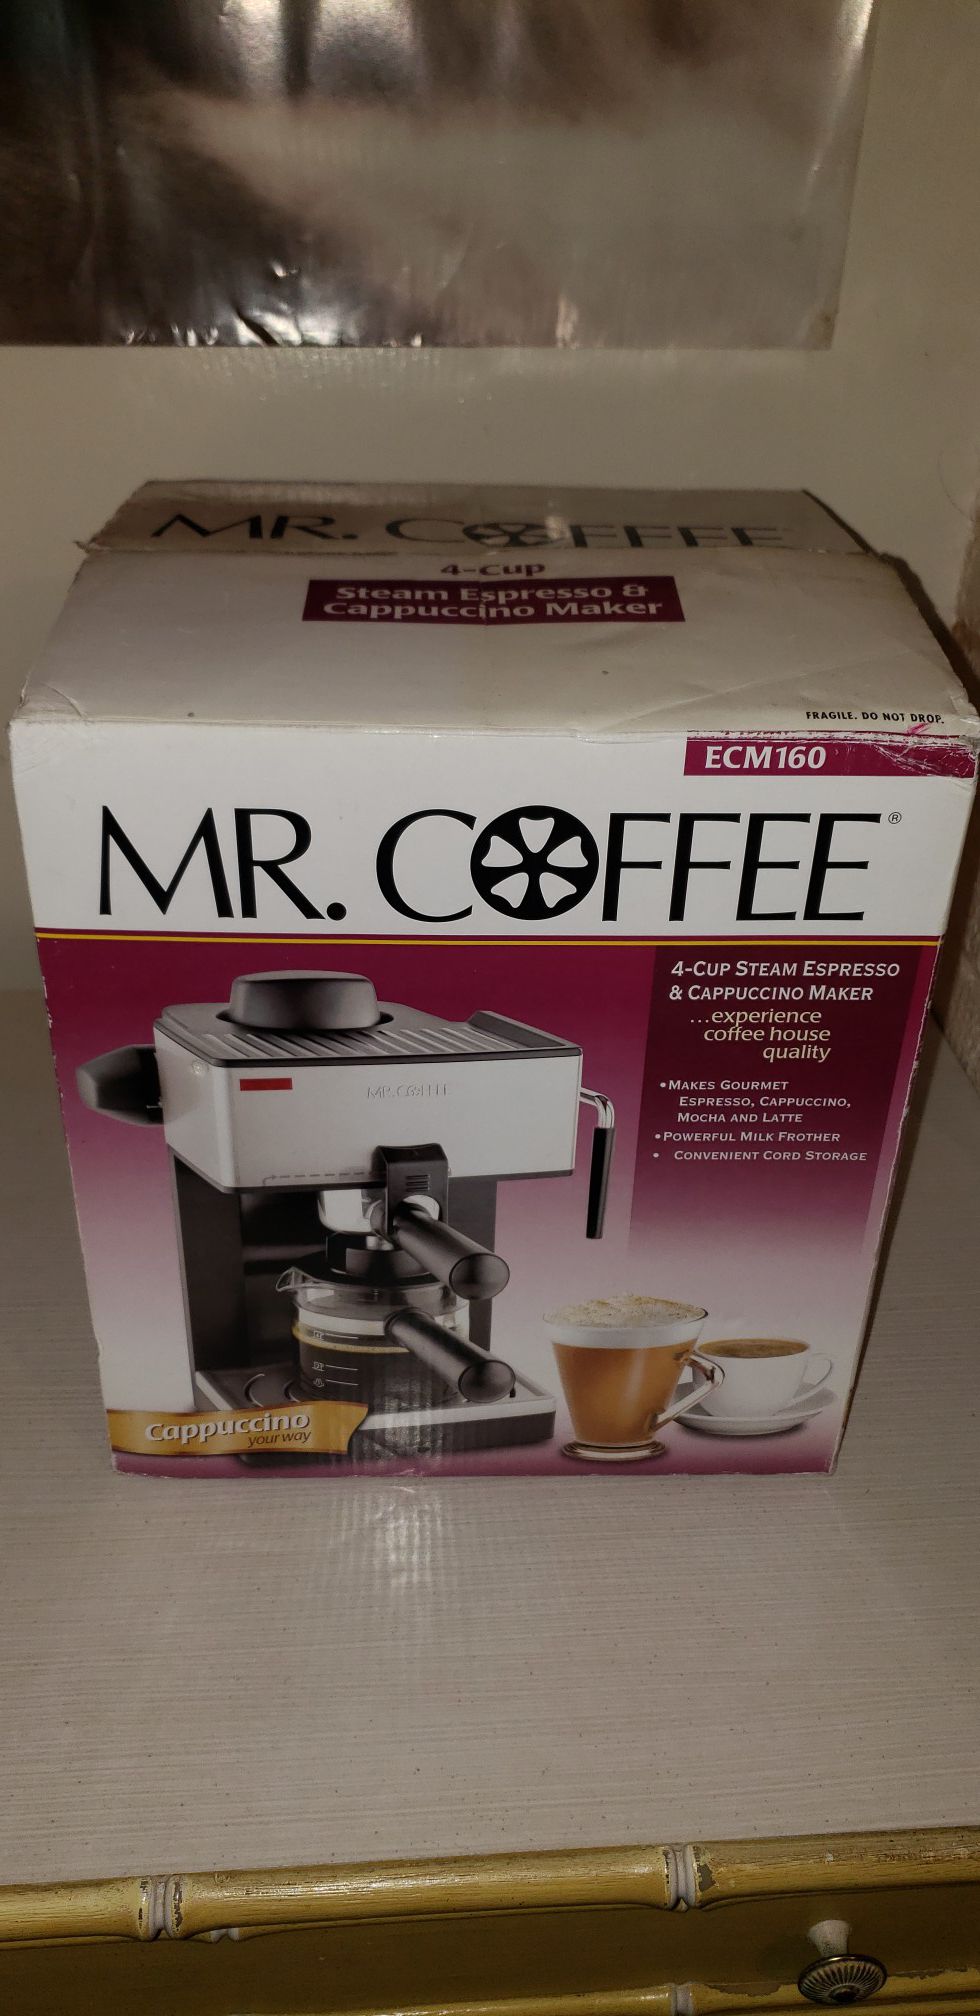 Mr. Coffee 4-Cup Steam Espresso/Cappuccino Maker